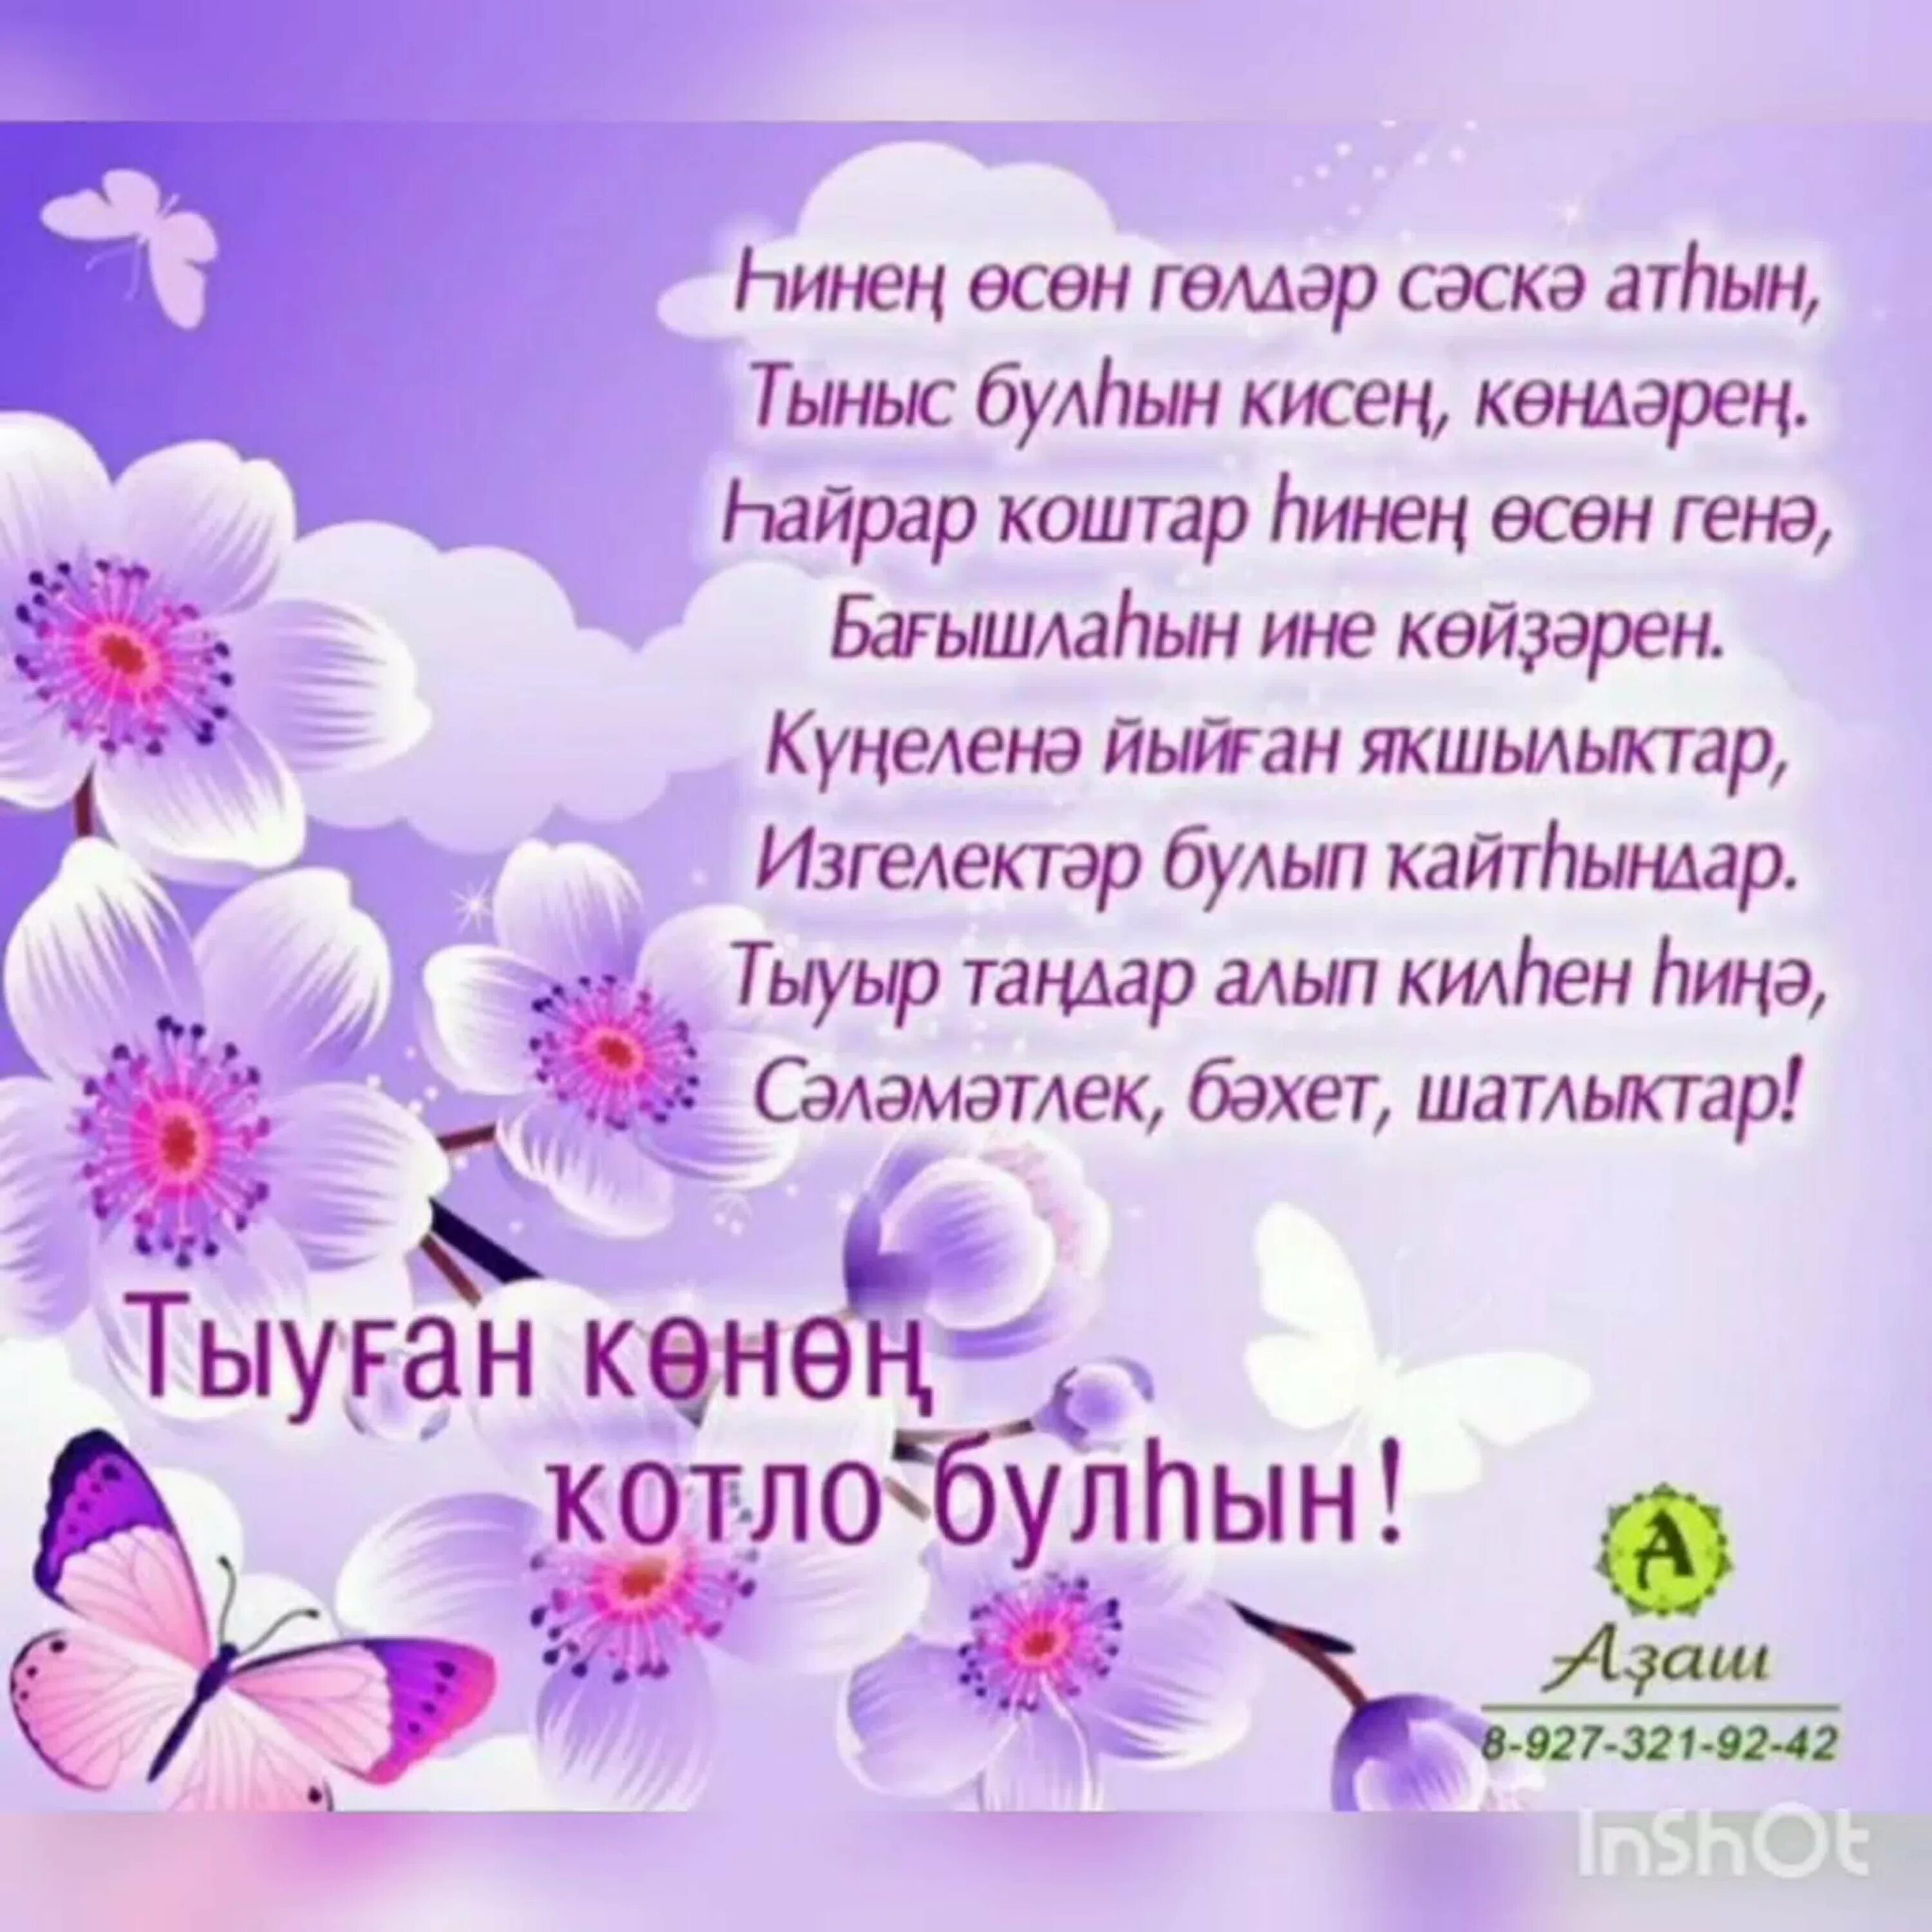 С днем рождения маме на башкирском. Башкирские стихи на день рождения. Поздравления с днём рождения на башкирском. Поздравления на башкирском языке. Поздравления с юбилеем женщине на башкирском языке.